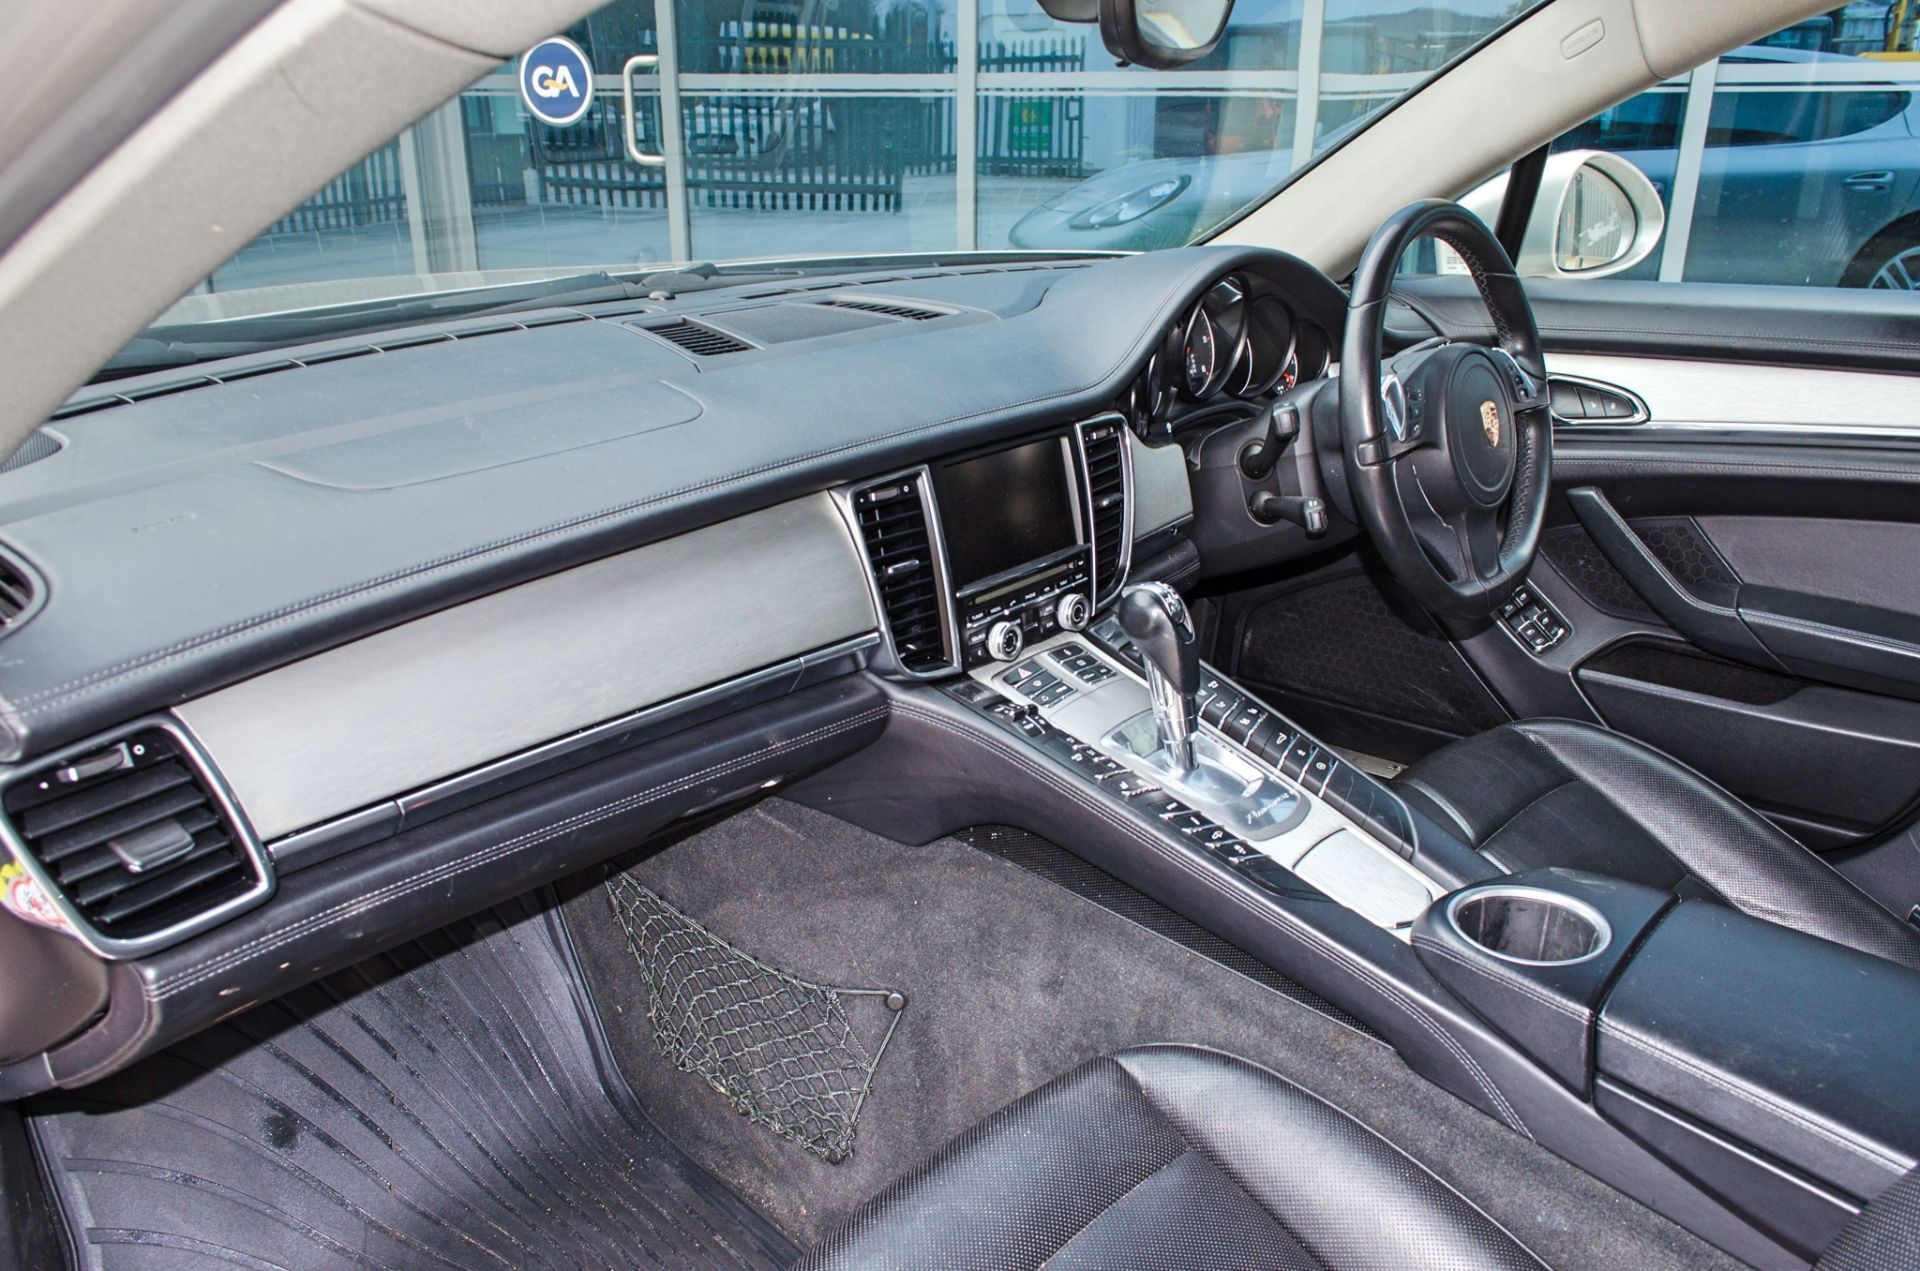 2012 Porsche Panamera 3.0 V6 diesel Tiptronic 5 door hatchback - Image 33 of 55